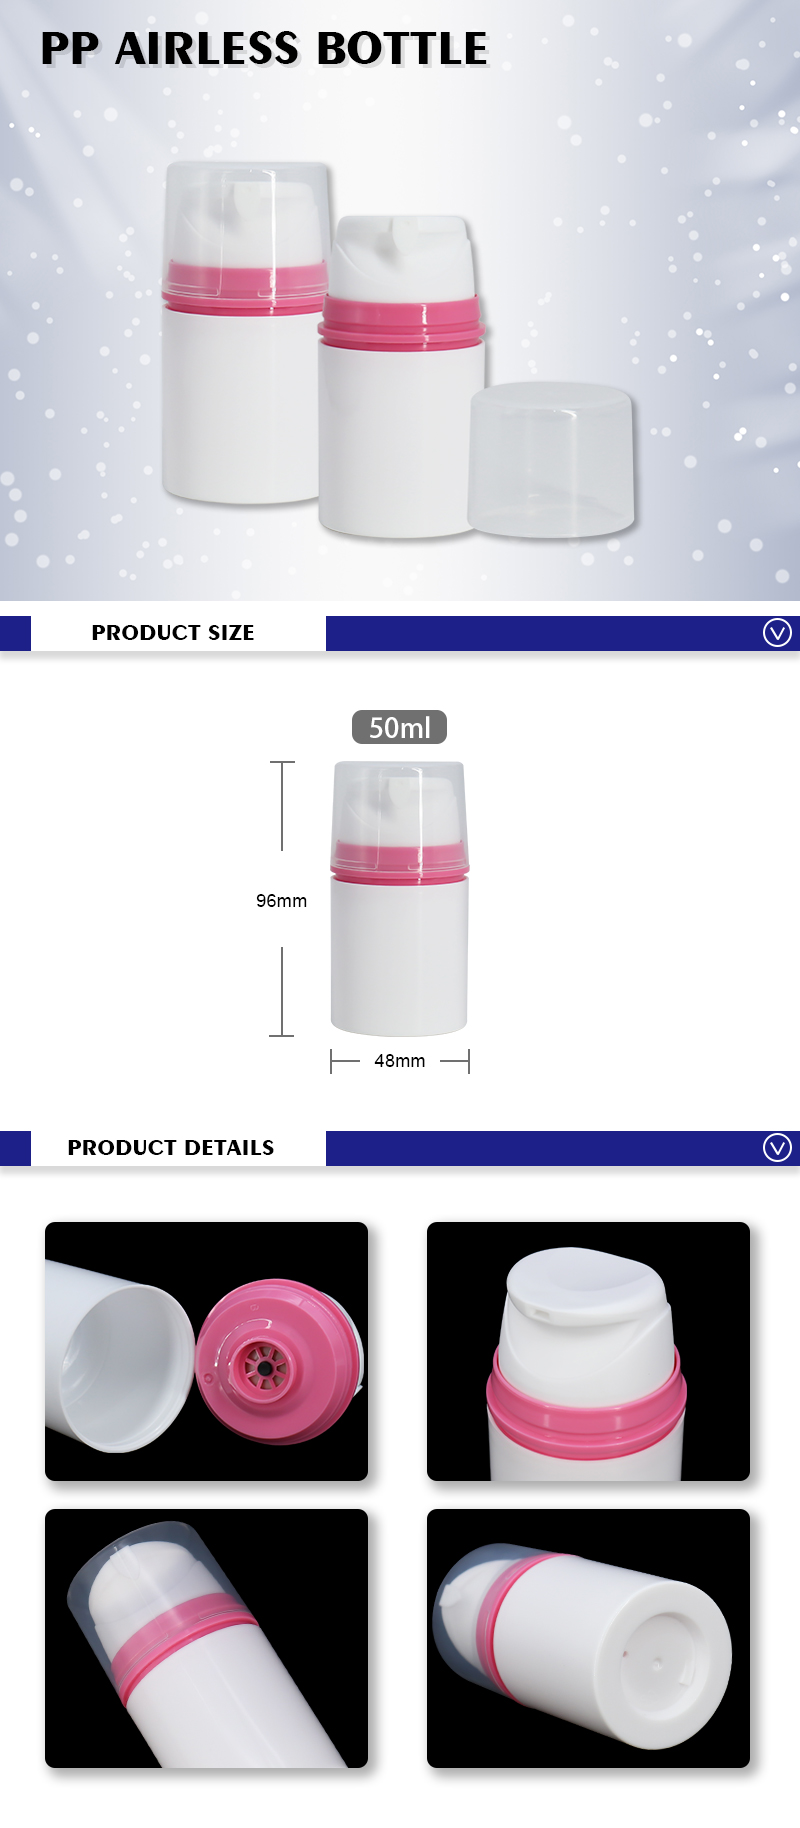 50ml White Plastic PP Airless Bottle for Foundation Make Up , Sunscreen Lotion Bottles